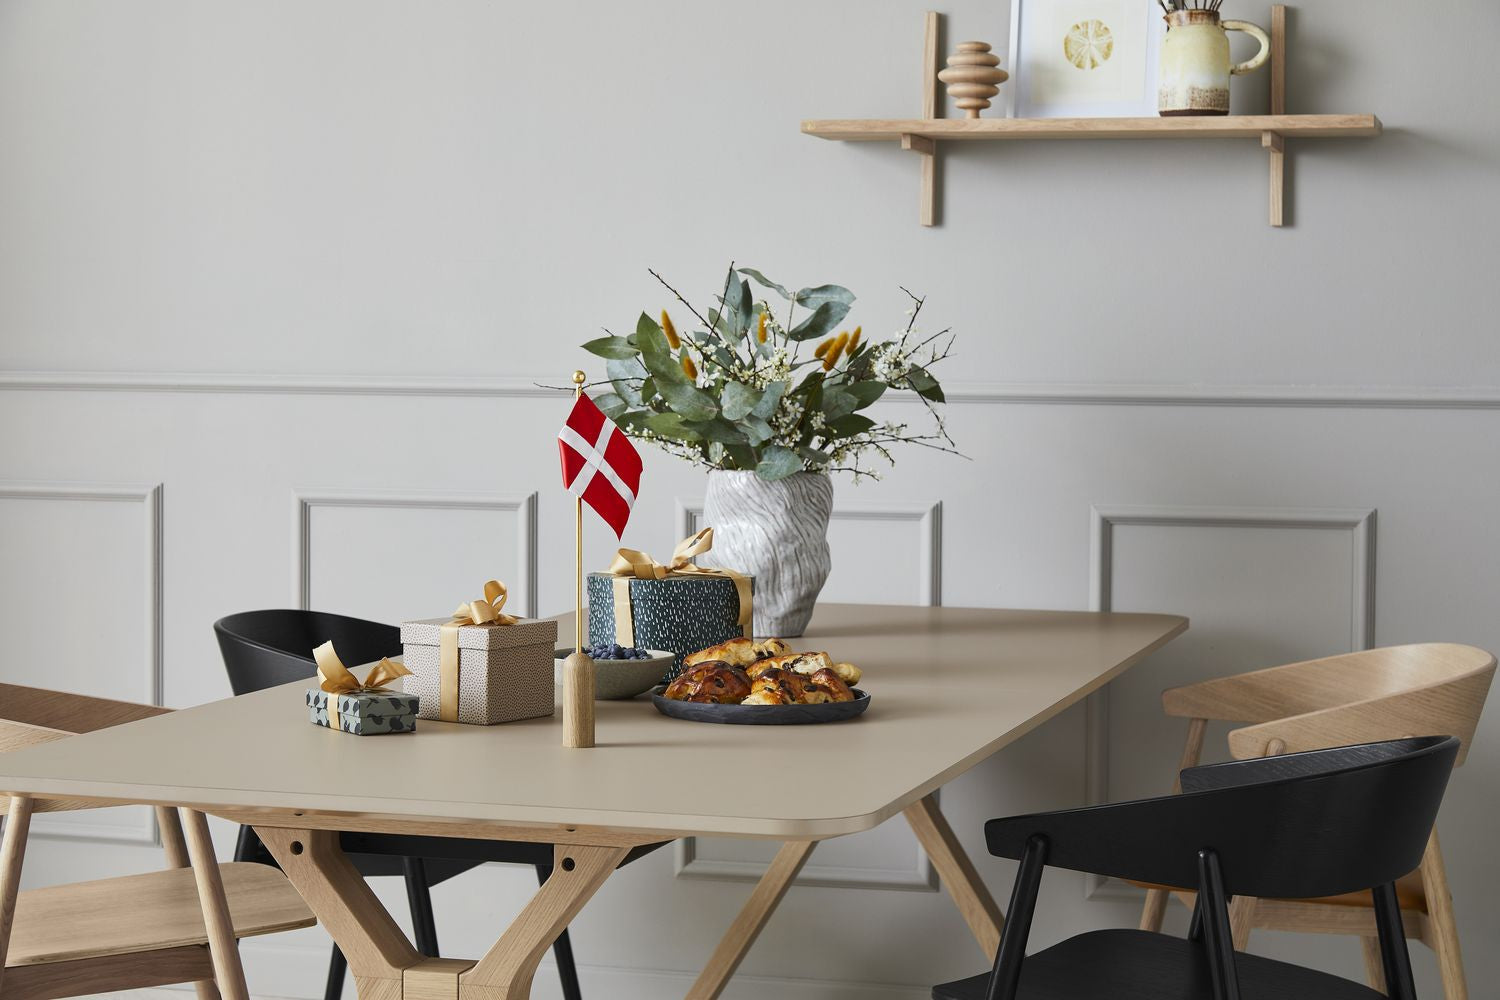 安徒生家具庆祝丹麦国旗H40厘米